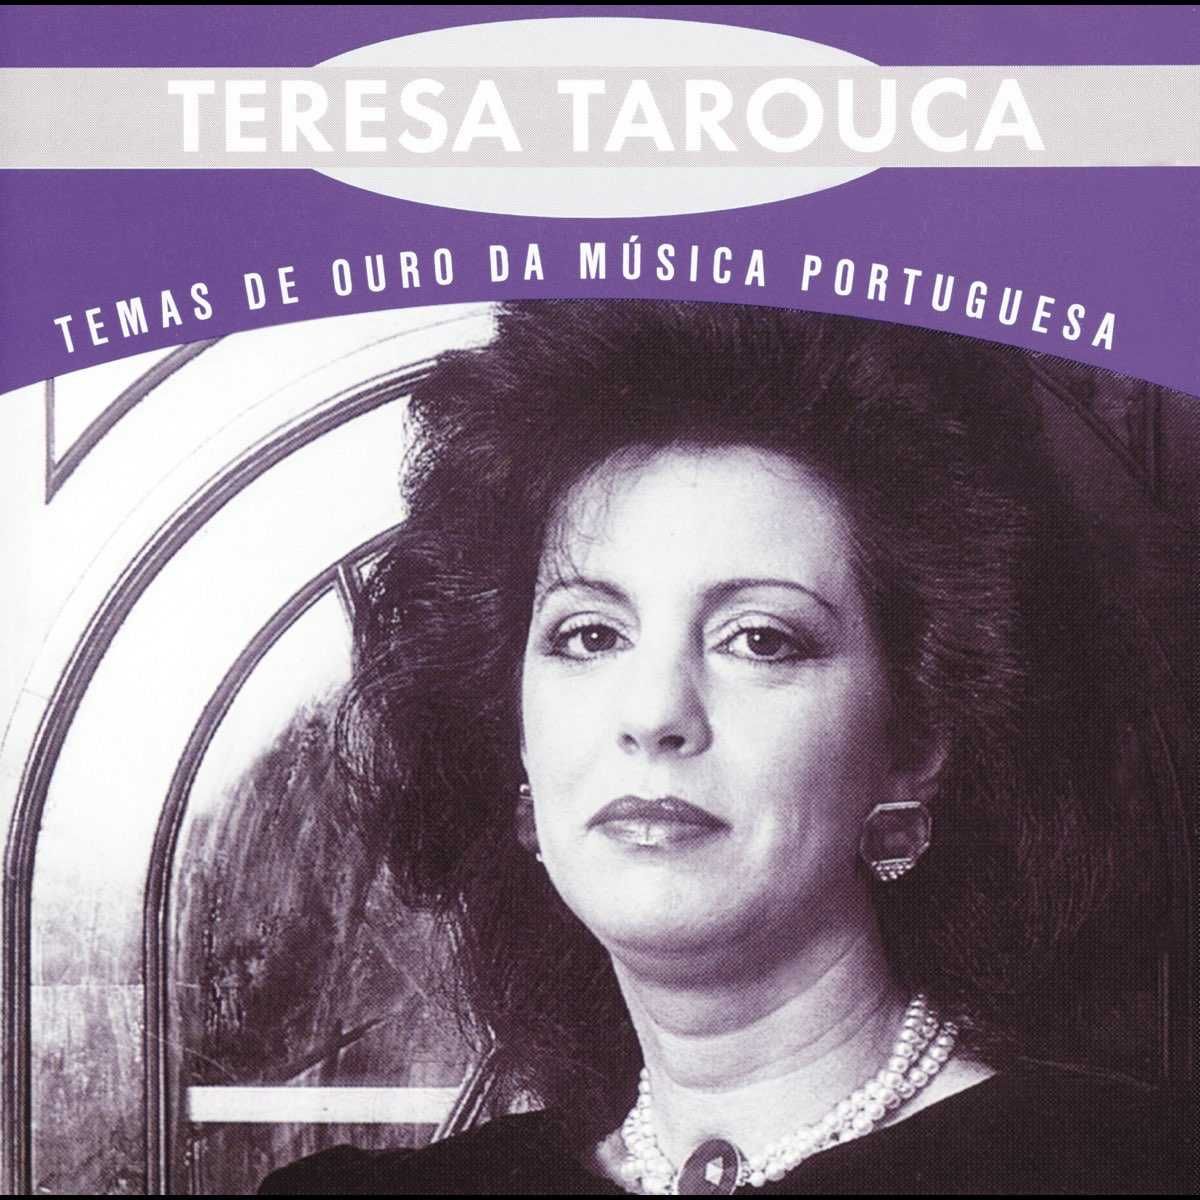 Teresa Tarouca - "Temas de Ouro da Música Portuguesa" CD